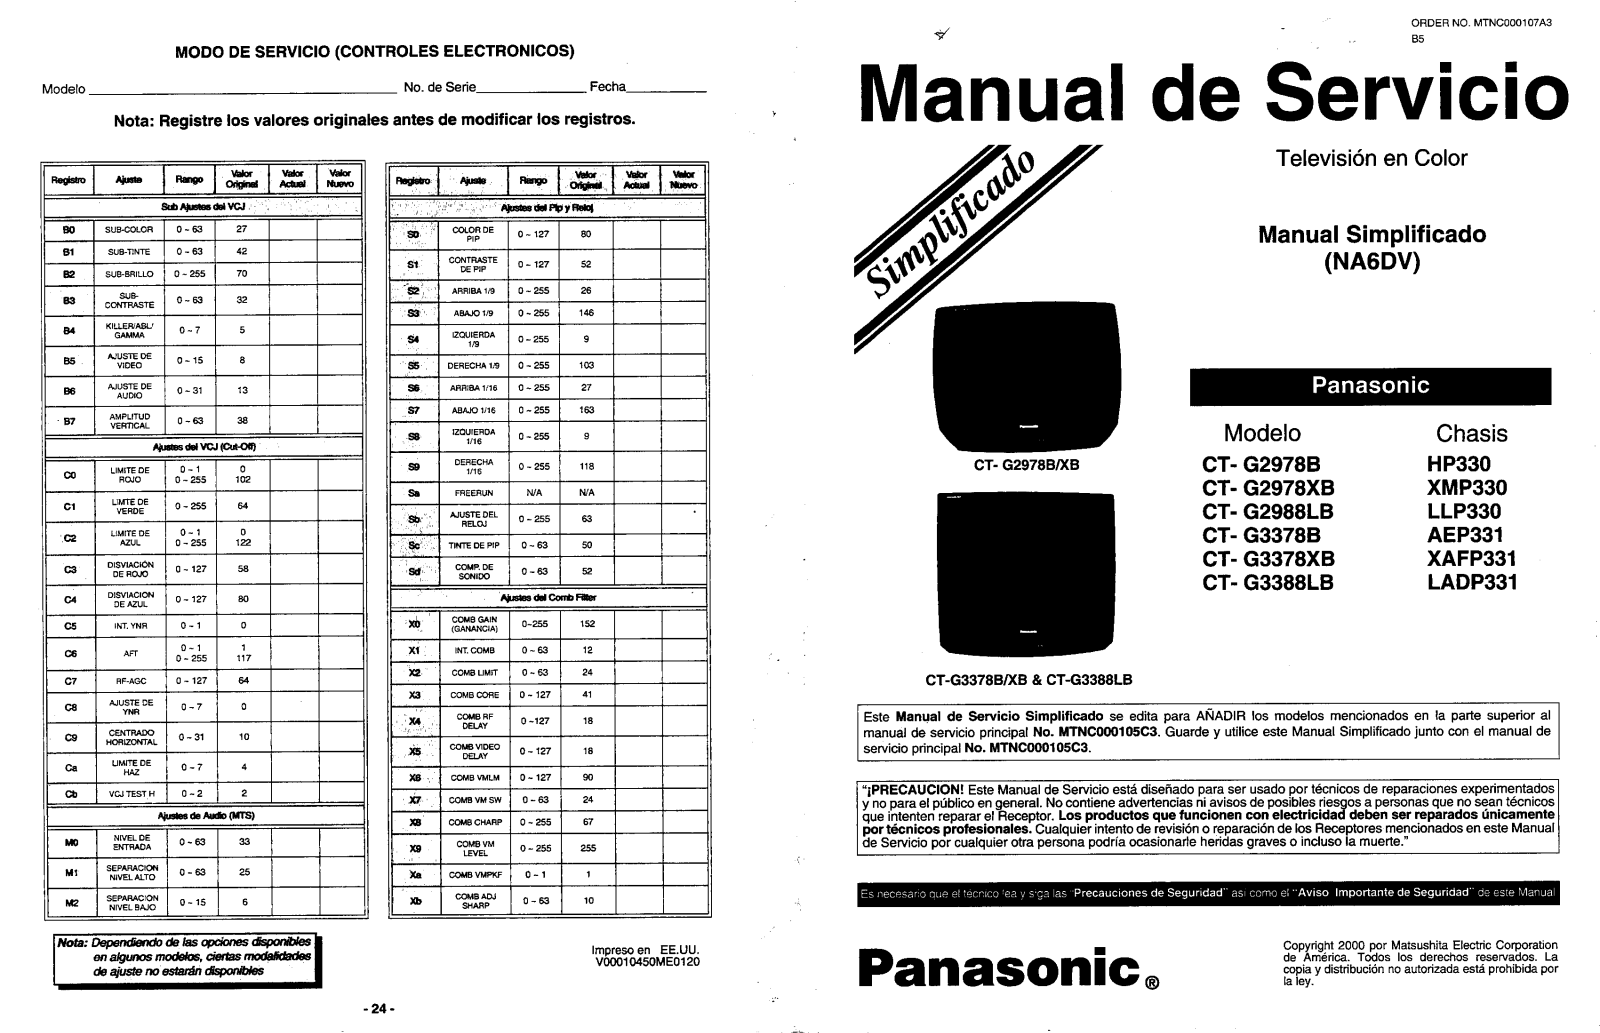 Panasonic CTG2978B, CTG2978XB, CTG2988LB, CTG3378B, CTG3378XB Service Manual